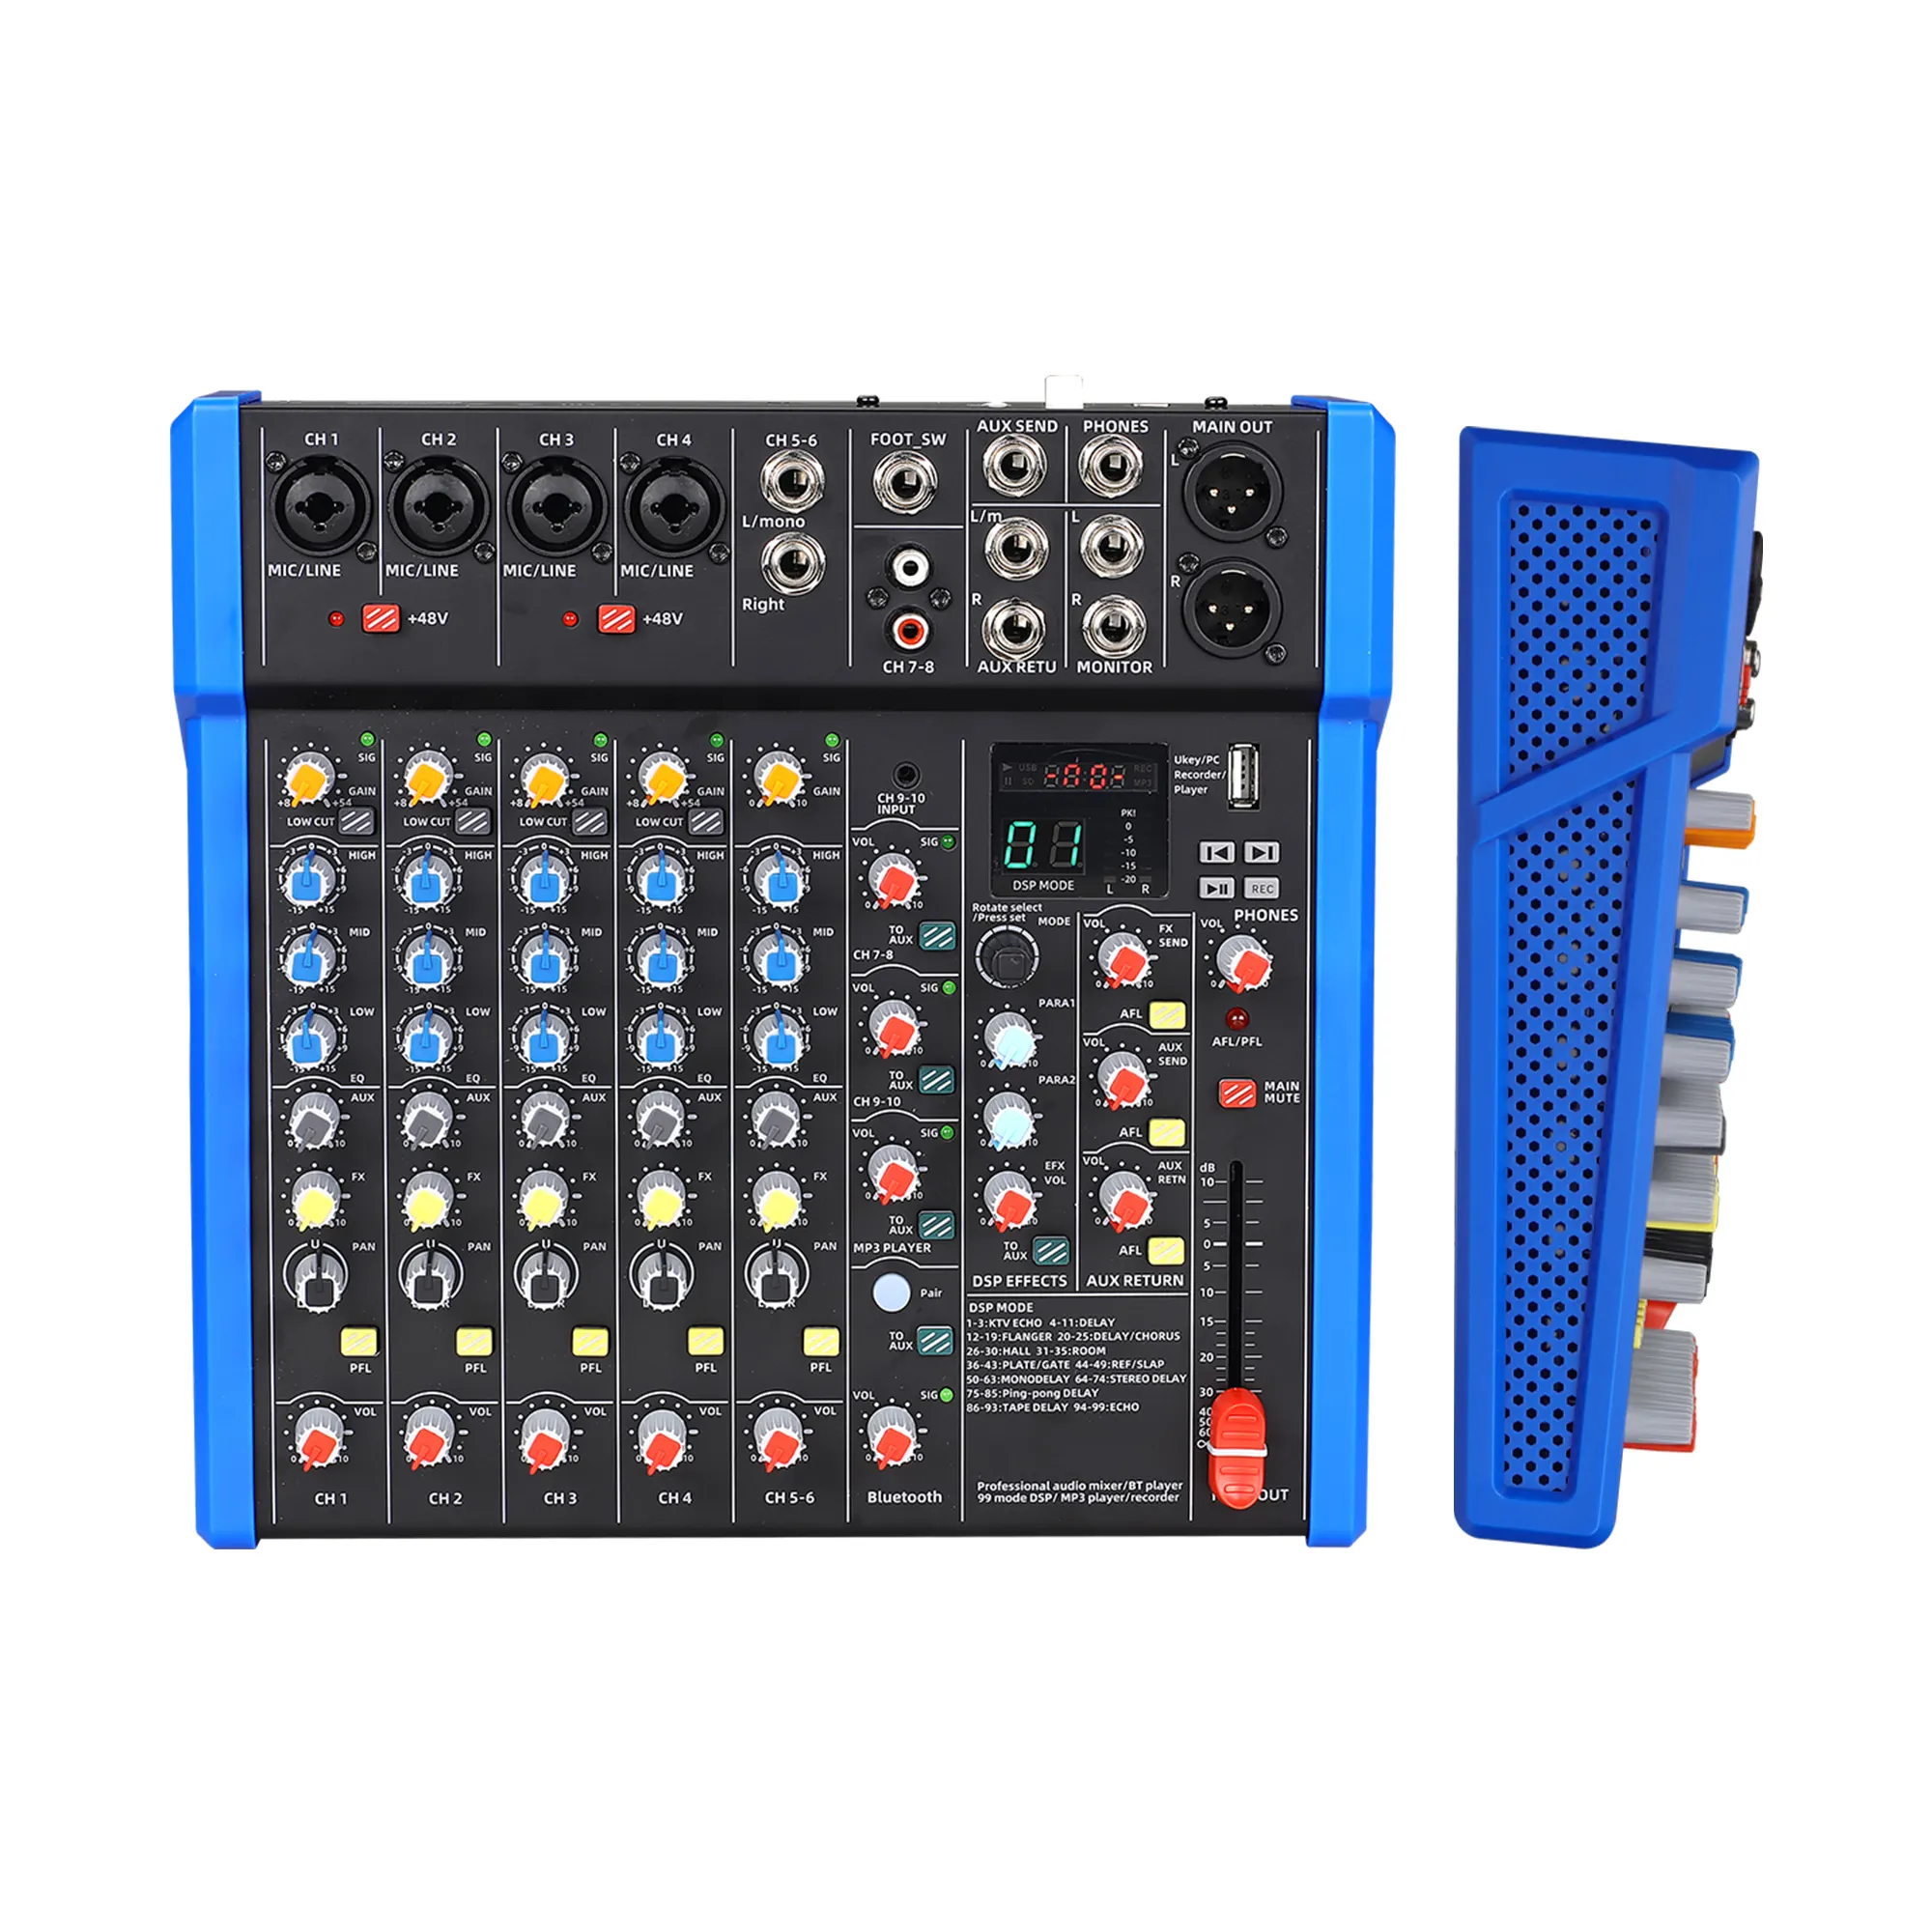 Doğruluk Pro ses MEB428 yüksek kalite düşük gürültü ses kartları için karıştırıcılar profesyonel dijital mikser parti